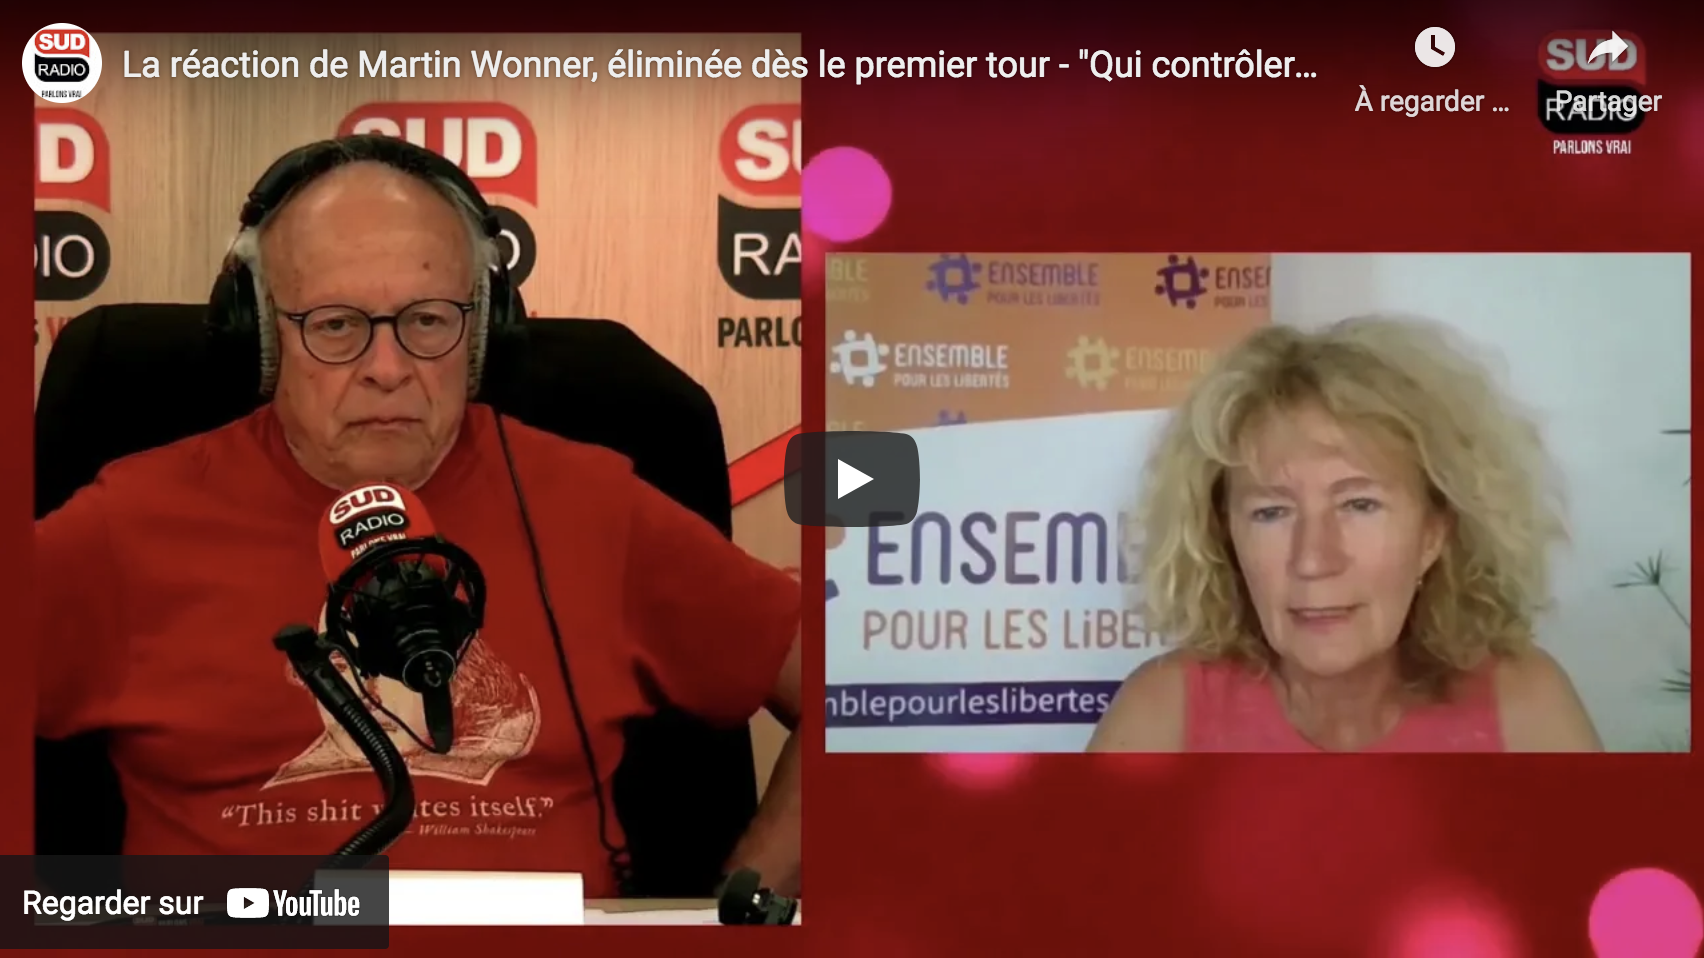 La réaction de Martin Wonner, éliminée dès le premier tour : “Qui contrôlera les excès du pouvoir ?” (VIDÉO)